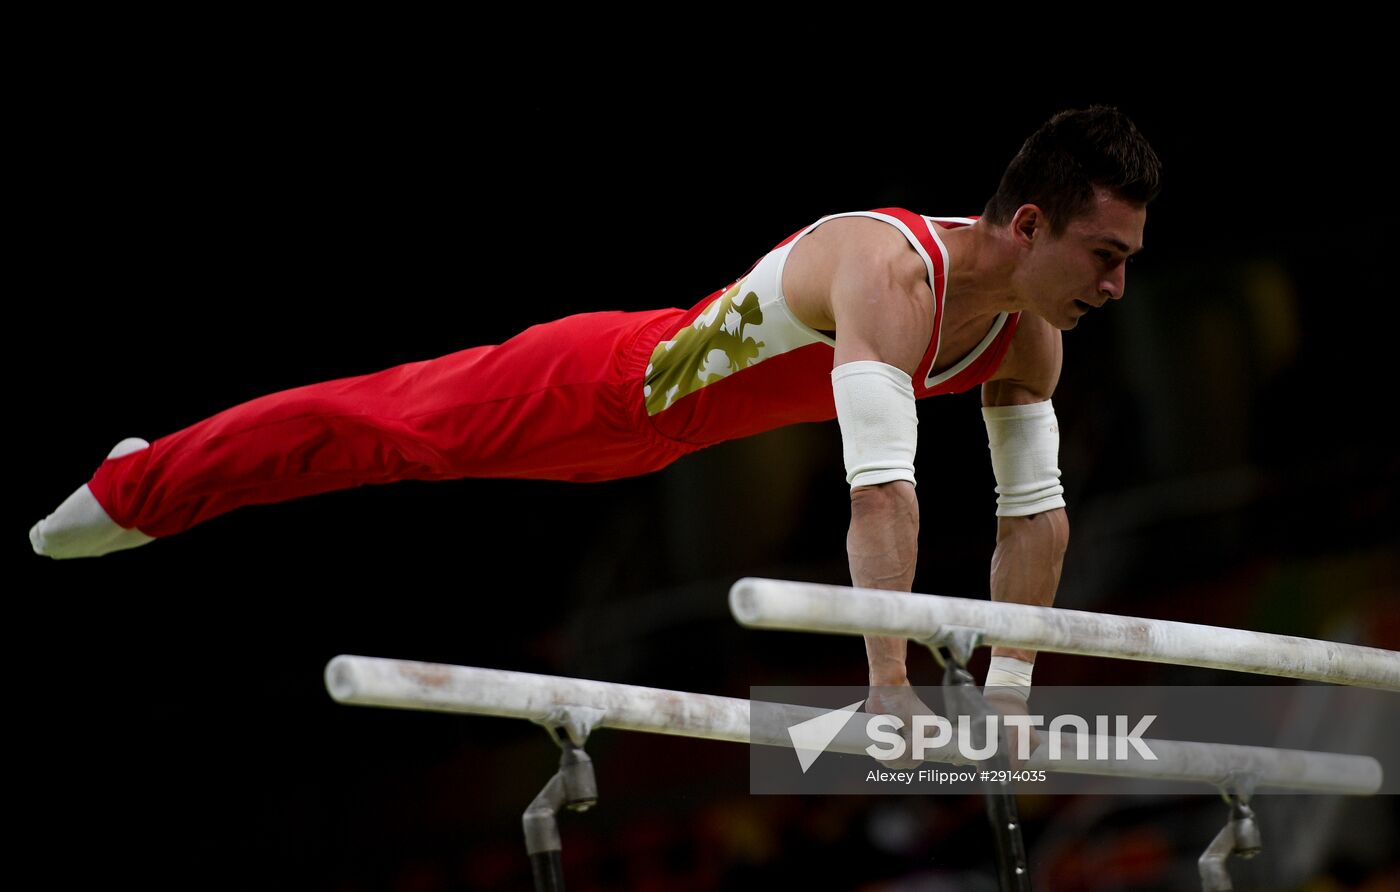 2016 Olympics. Artistics gymnastics. Men's parallel bars